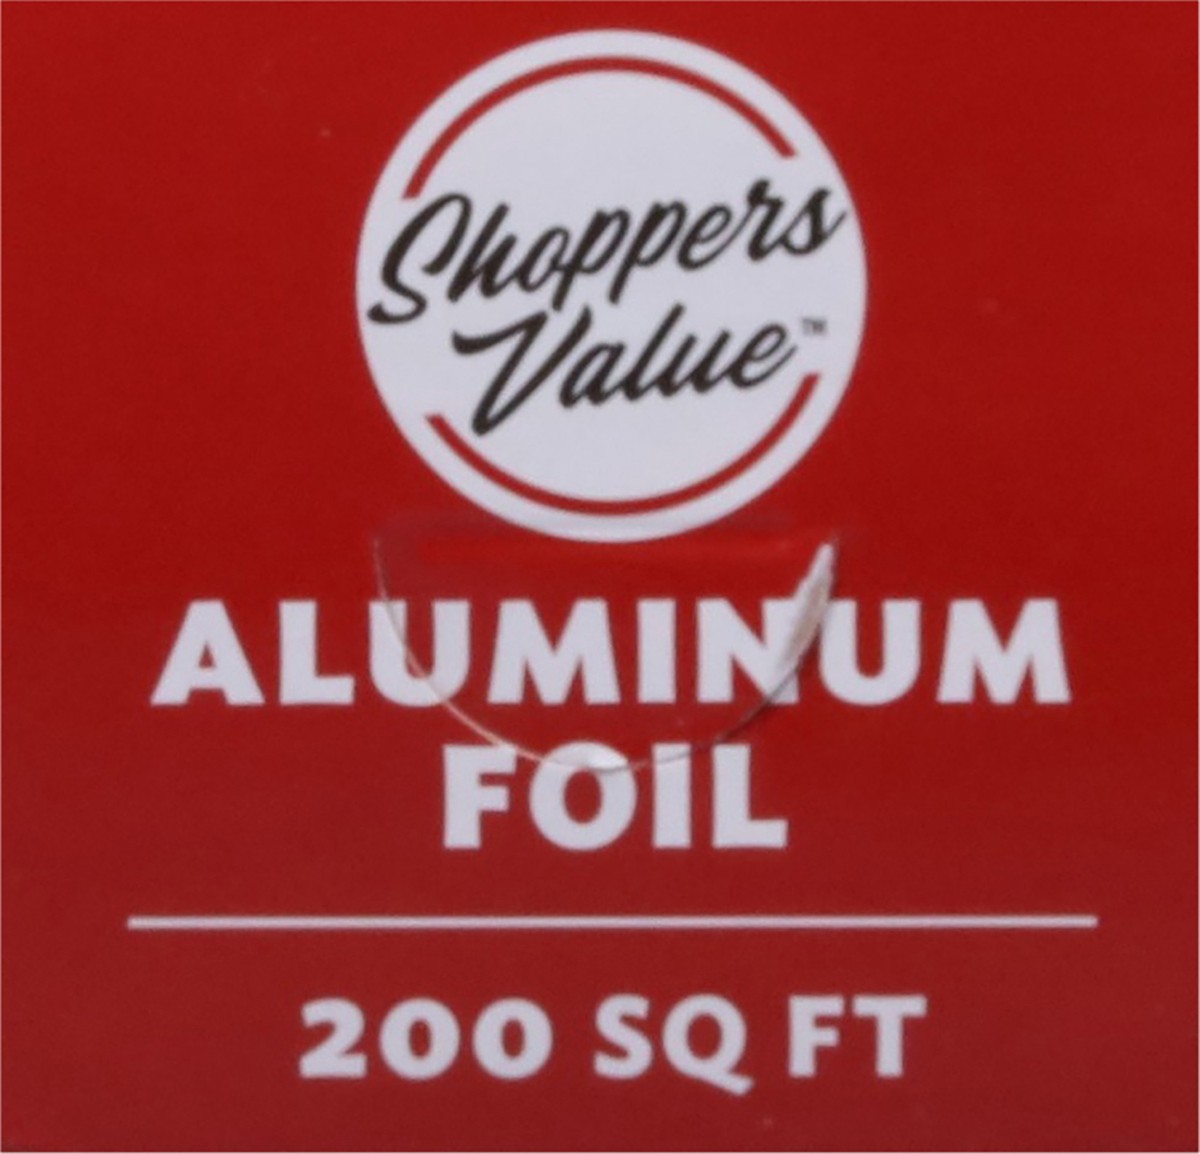 slide 8 of 9, Shoppers Value Shop Valu Aluminum Foil, 200 ft